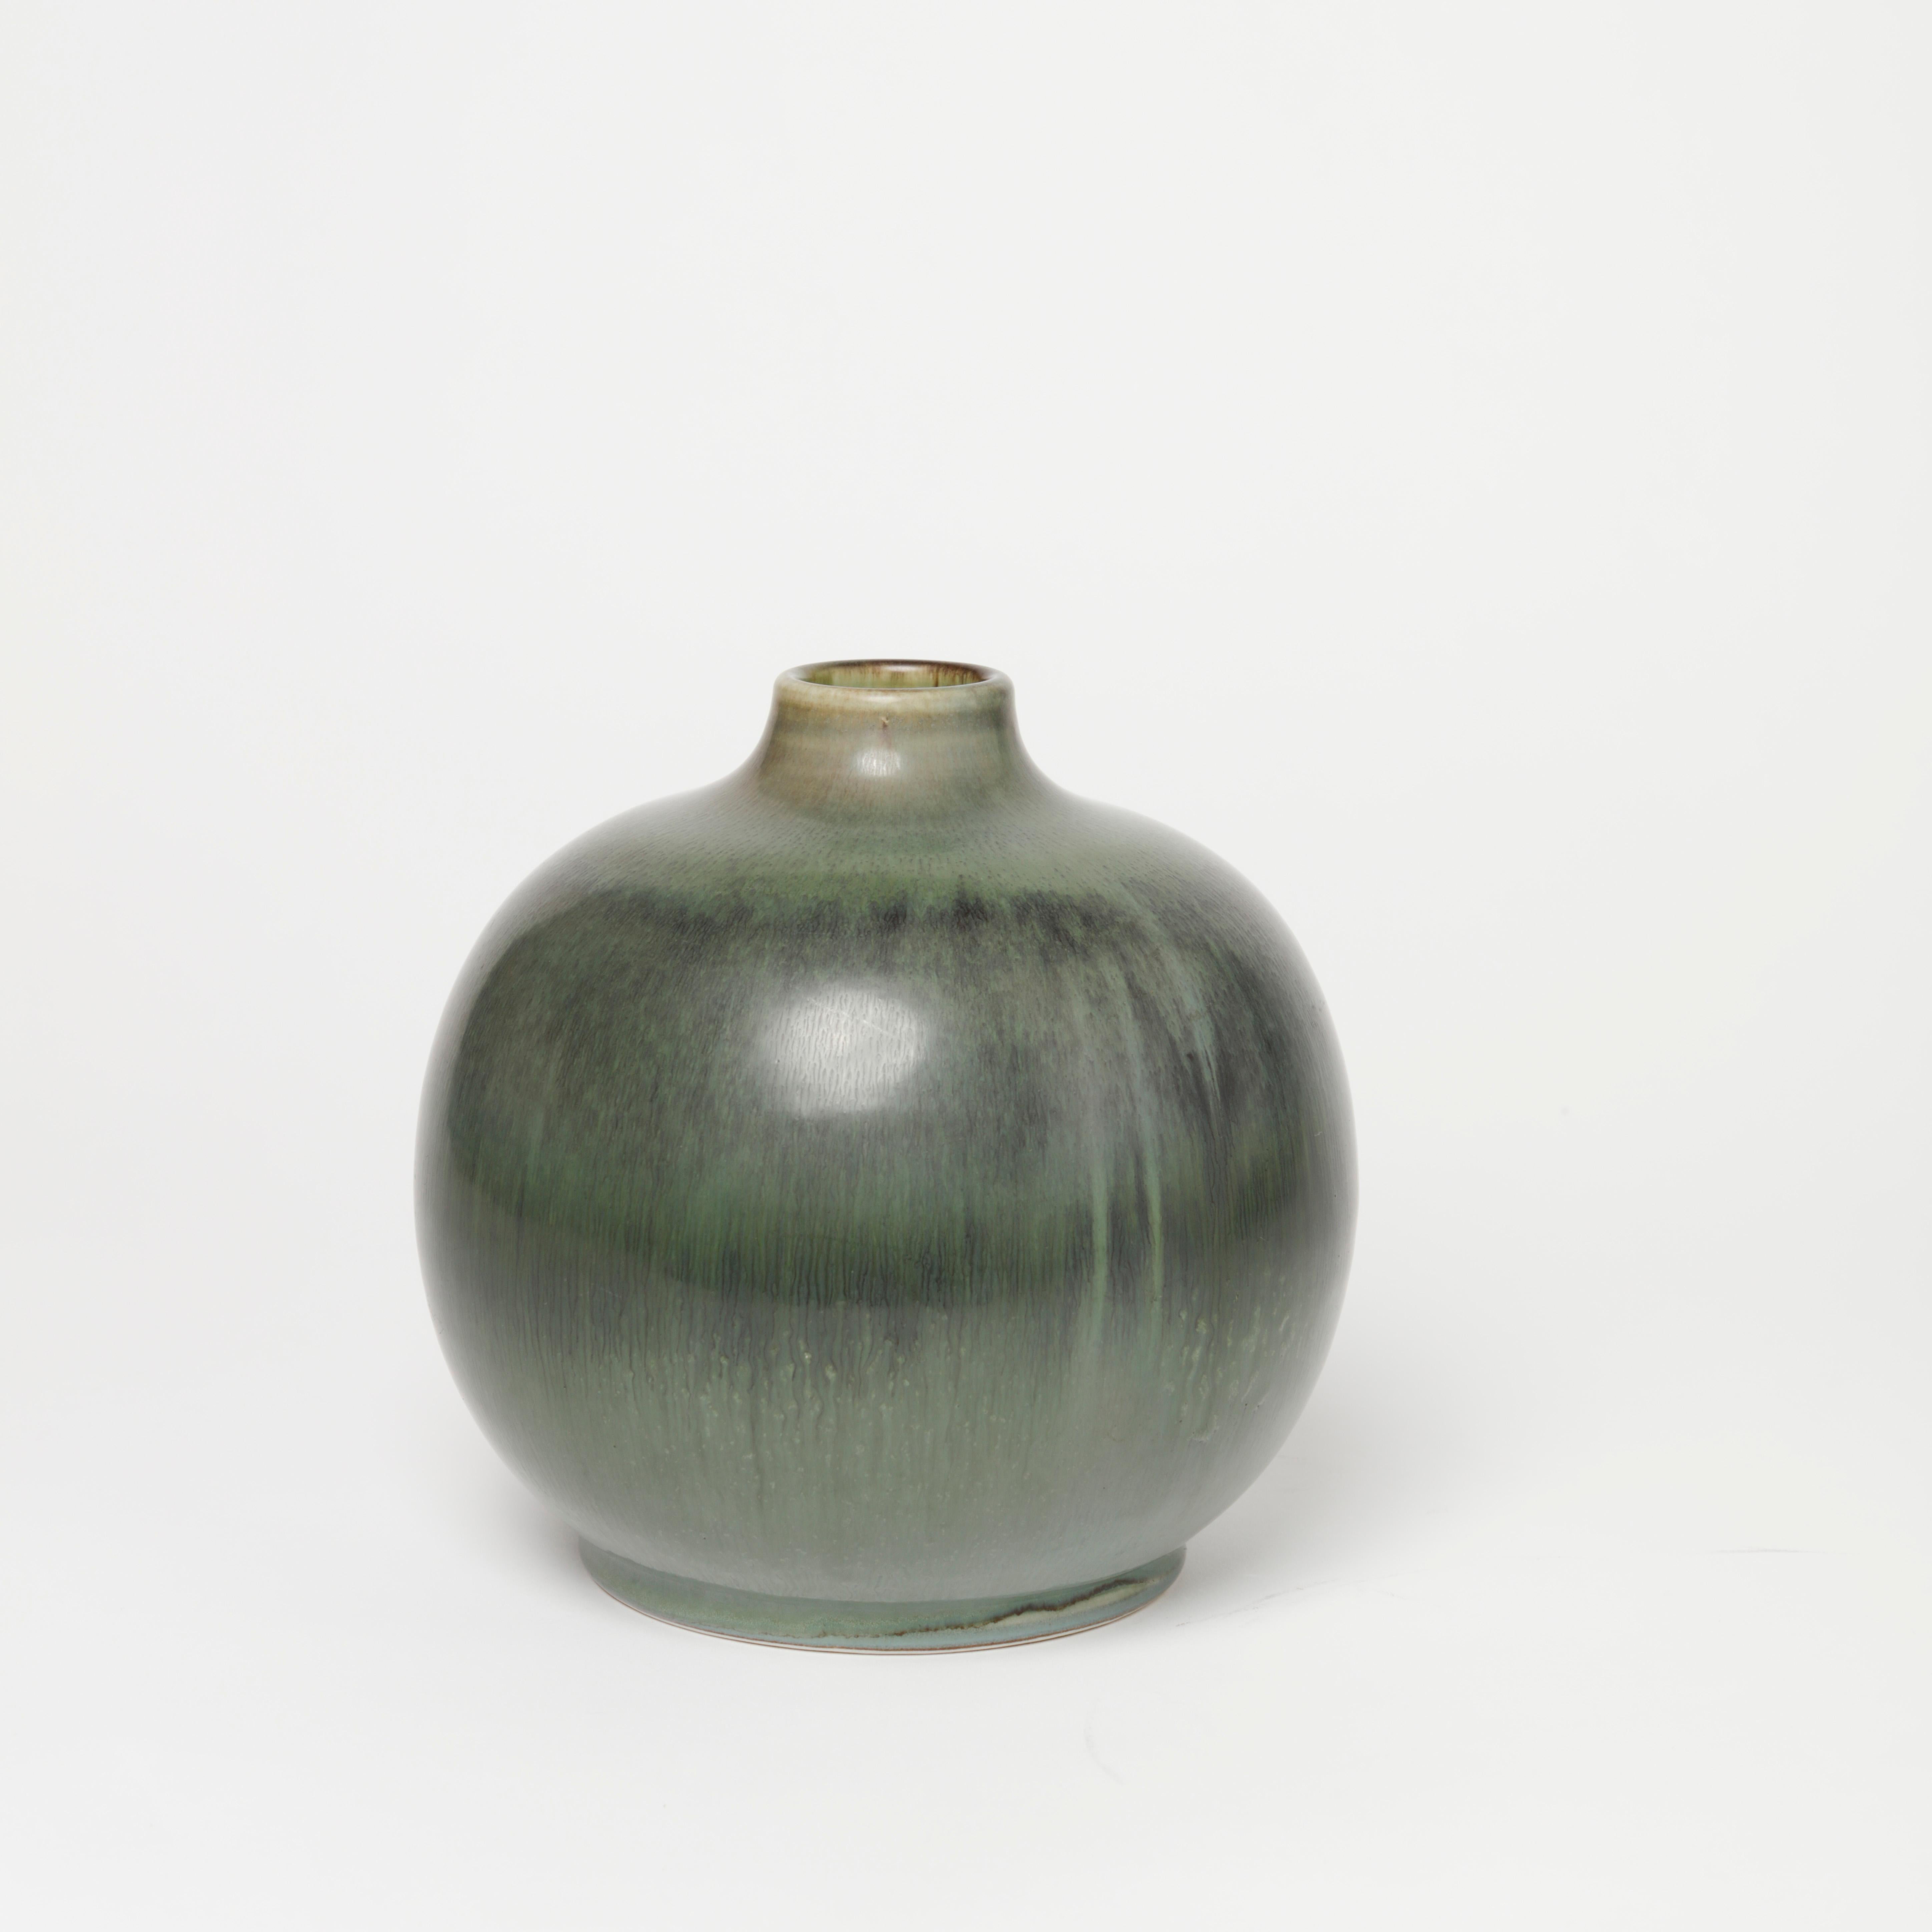 Scandinavian Modern Gertrud Lönegren Stoneware Vase for Rörstrand, 1940s For Sale